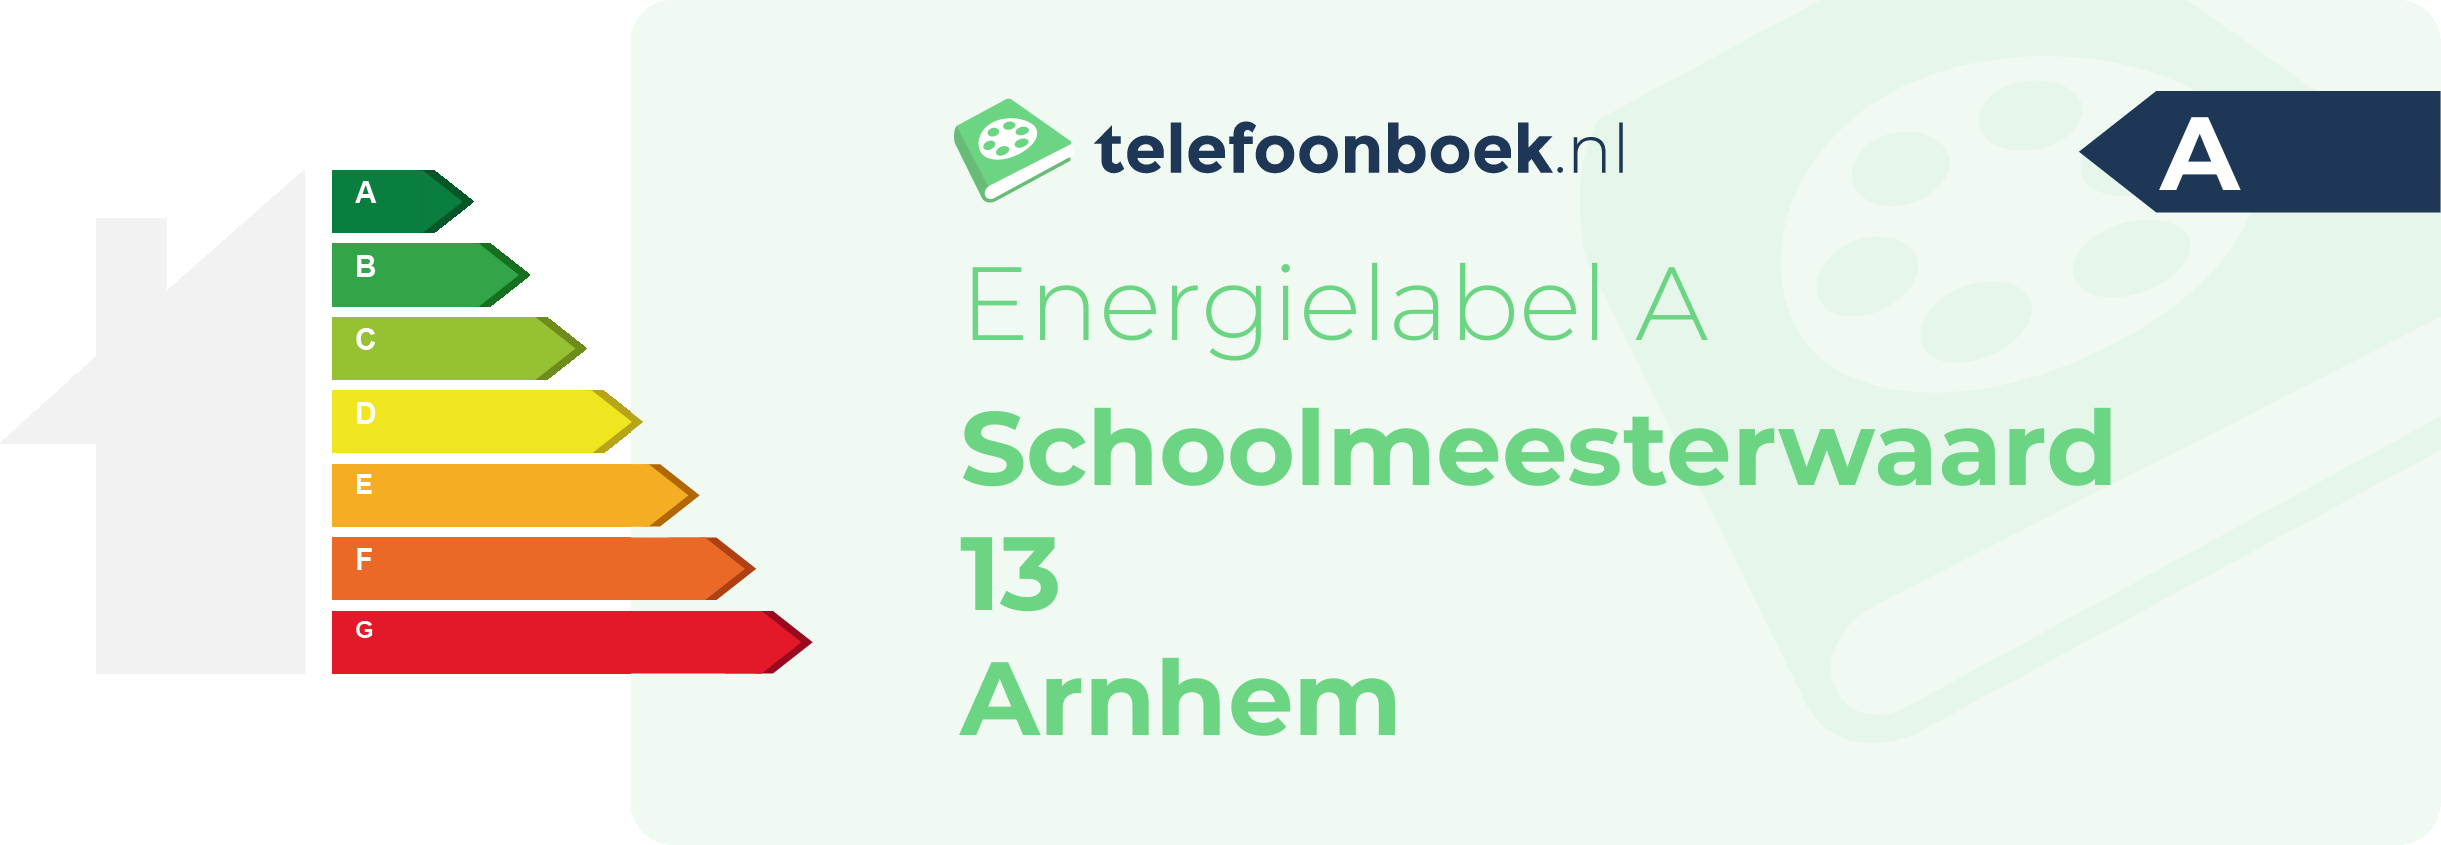 Energielabel Schoolmeesterwaard 13 Arnhem